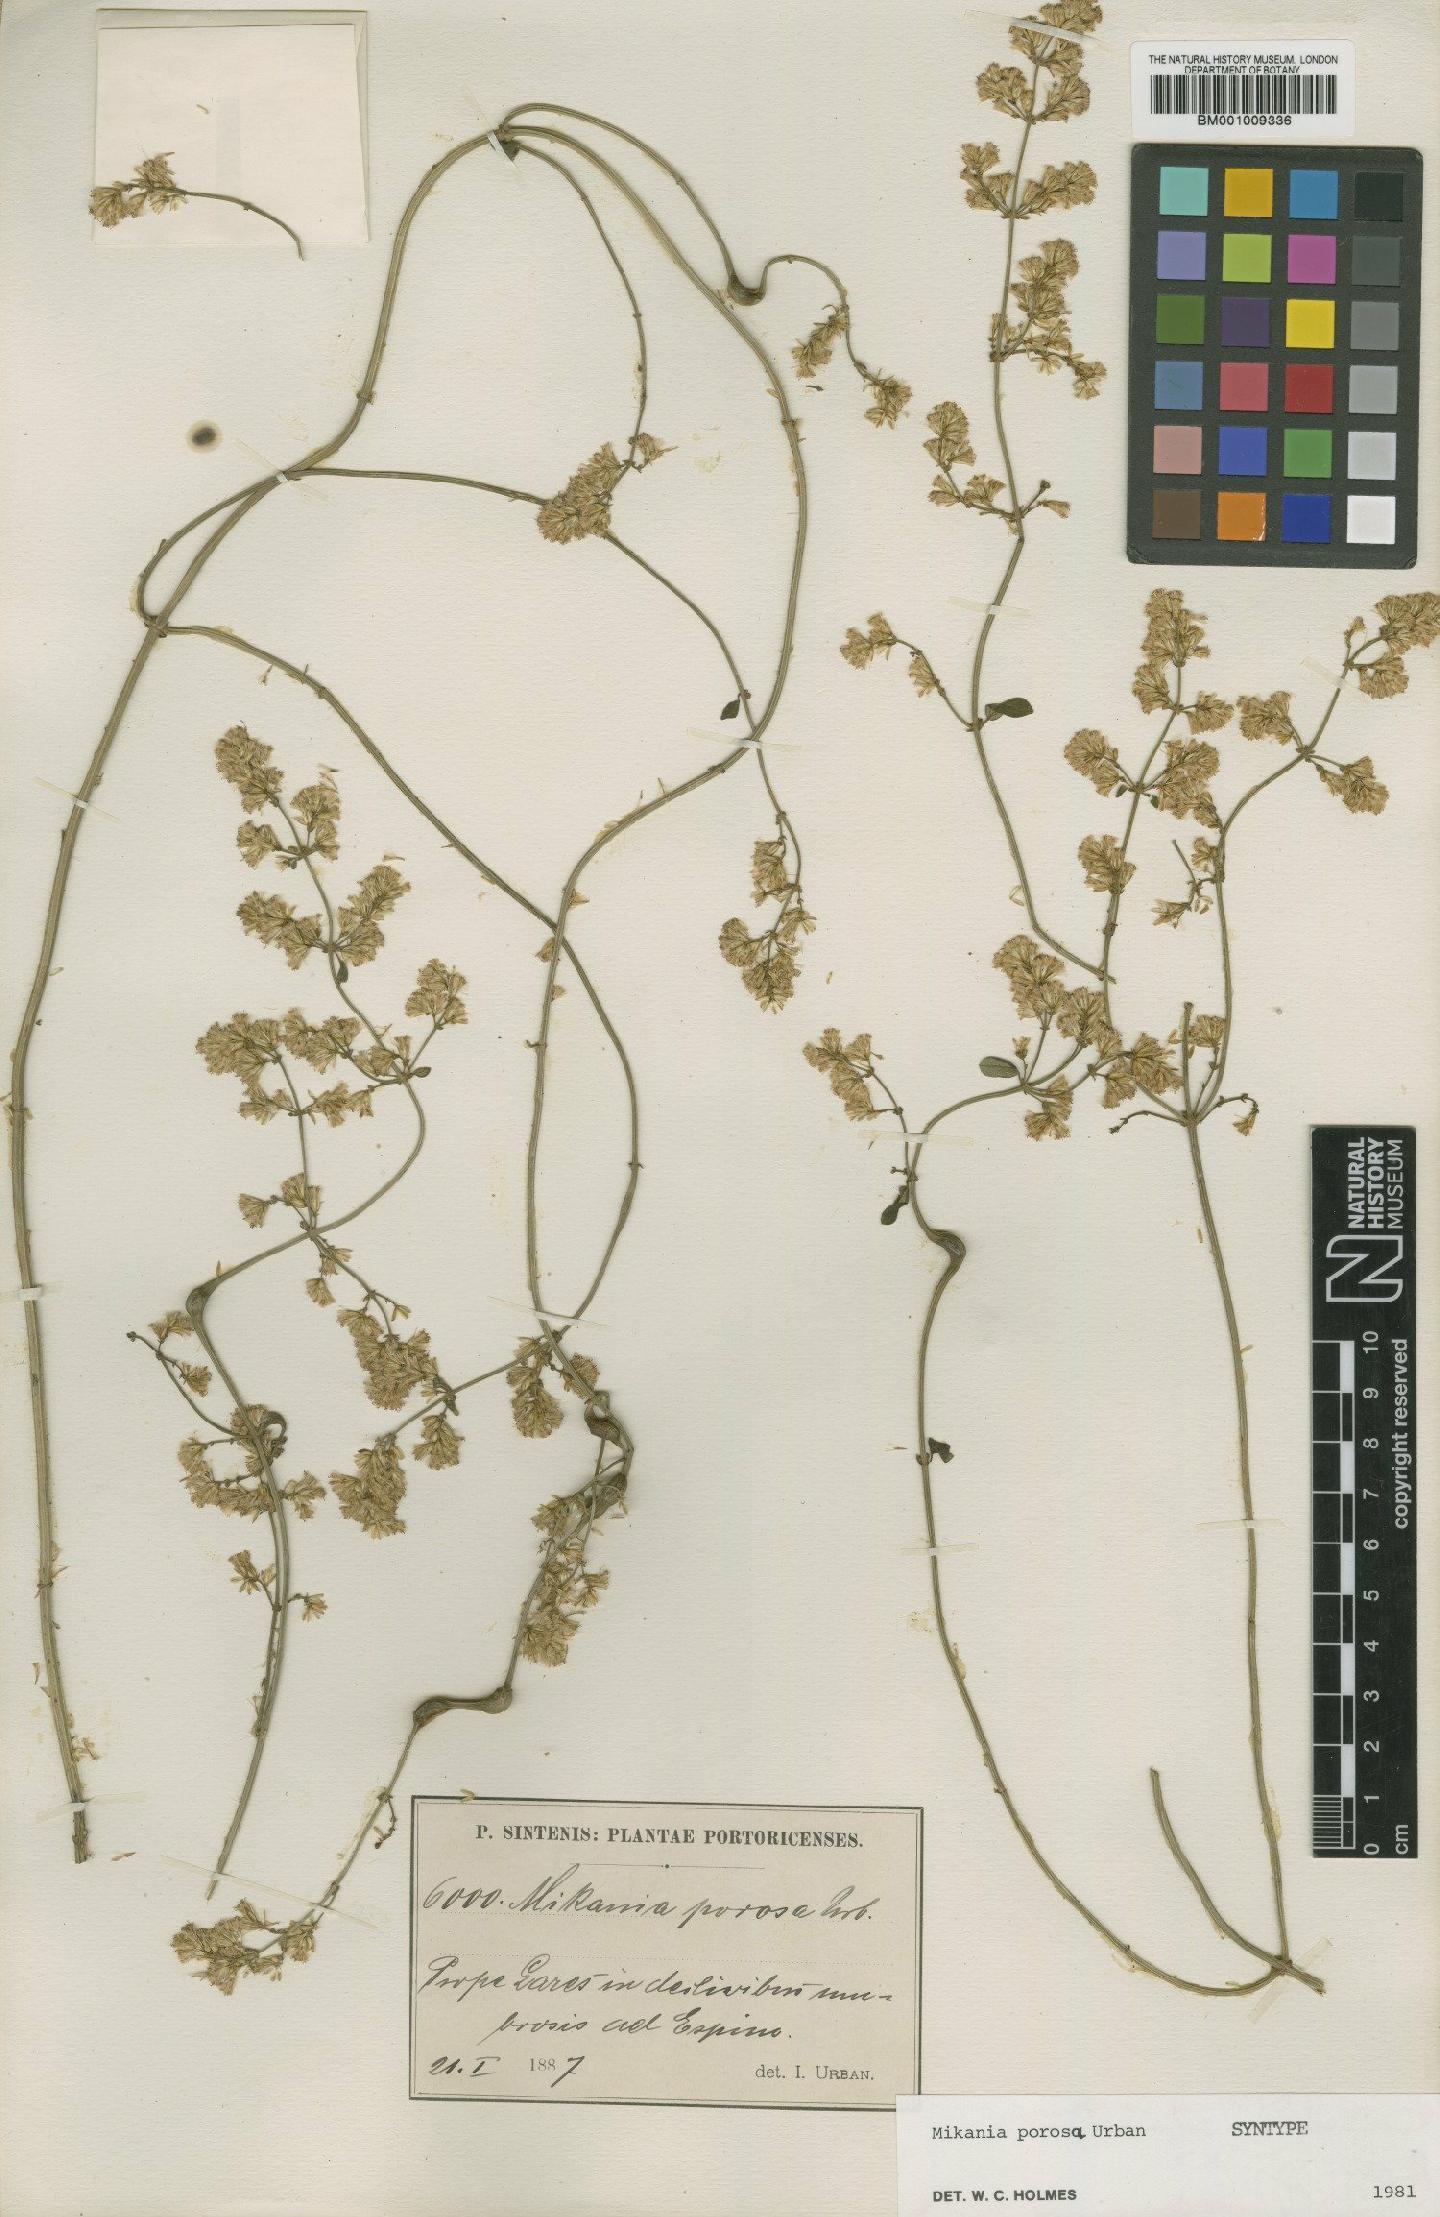 To NHMUK collection (Mikania porosa Urb.; Syntype; NHMUK:ecatalogue:572532)